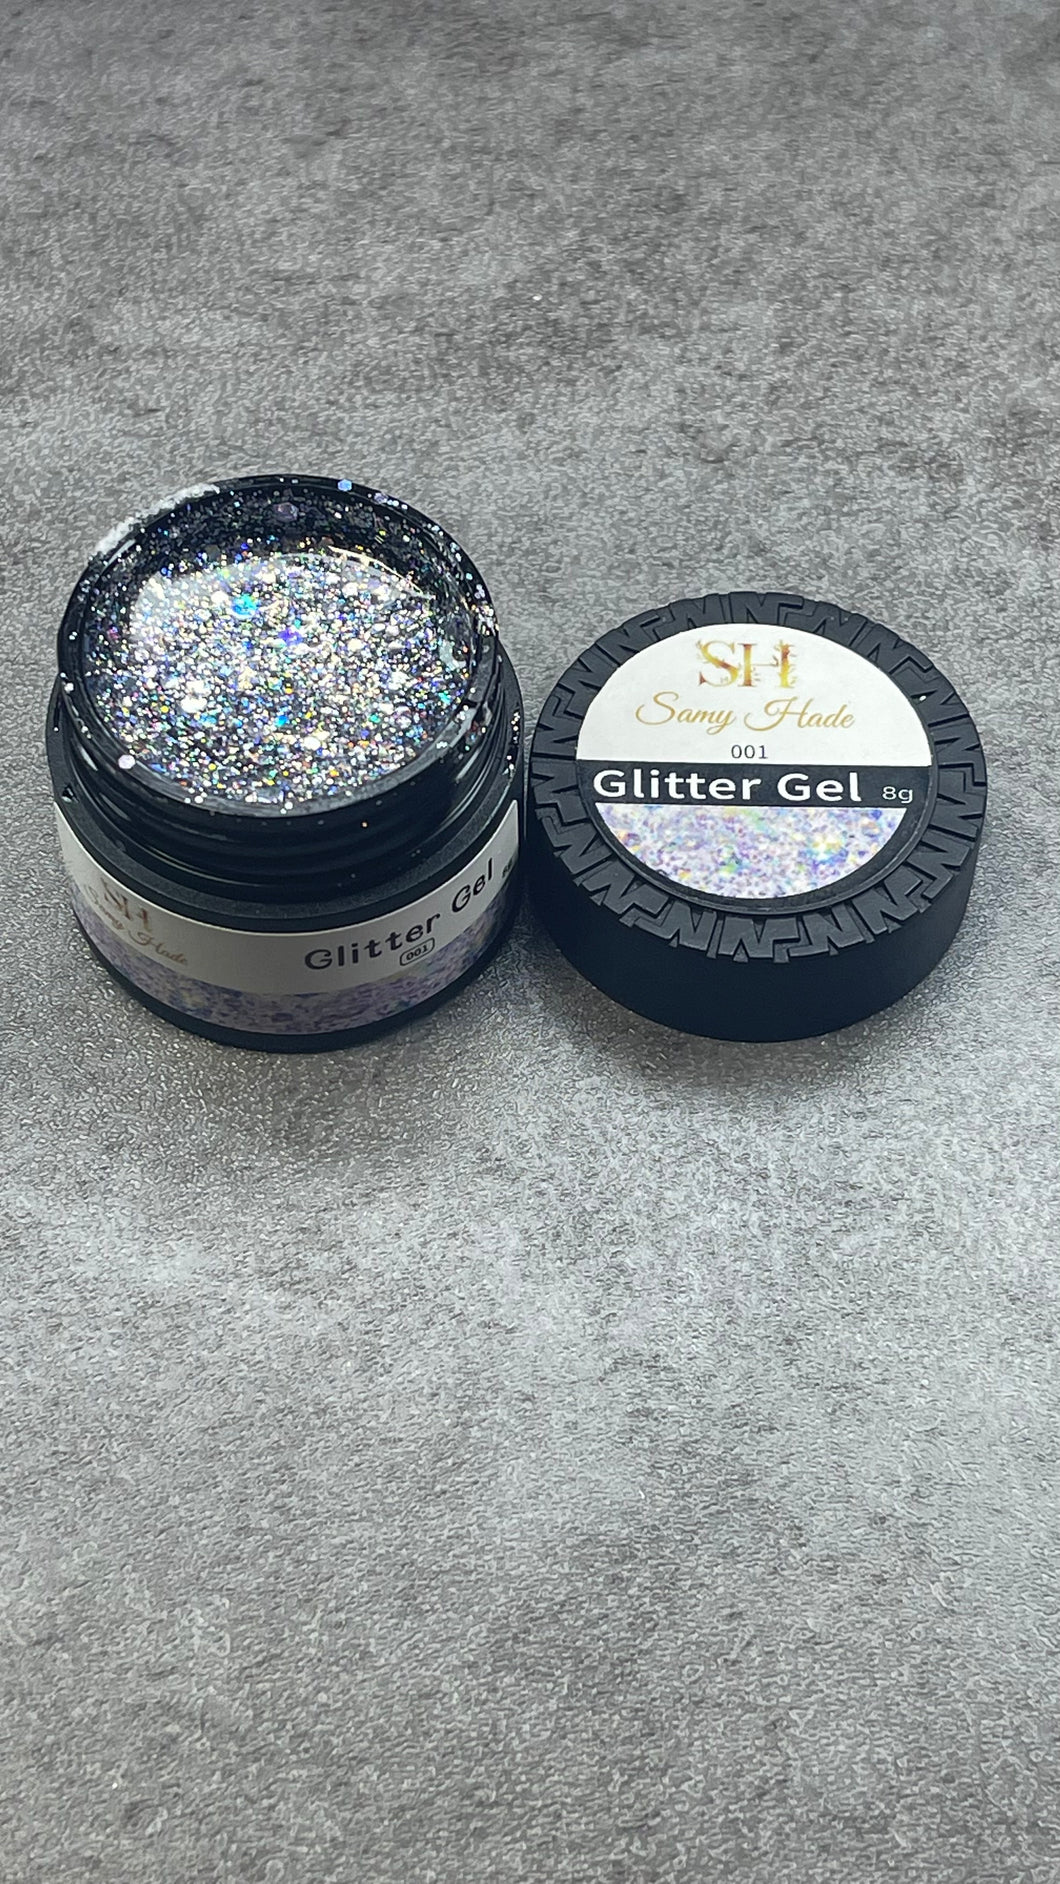 Glitter gel #001